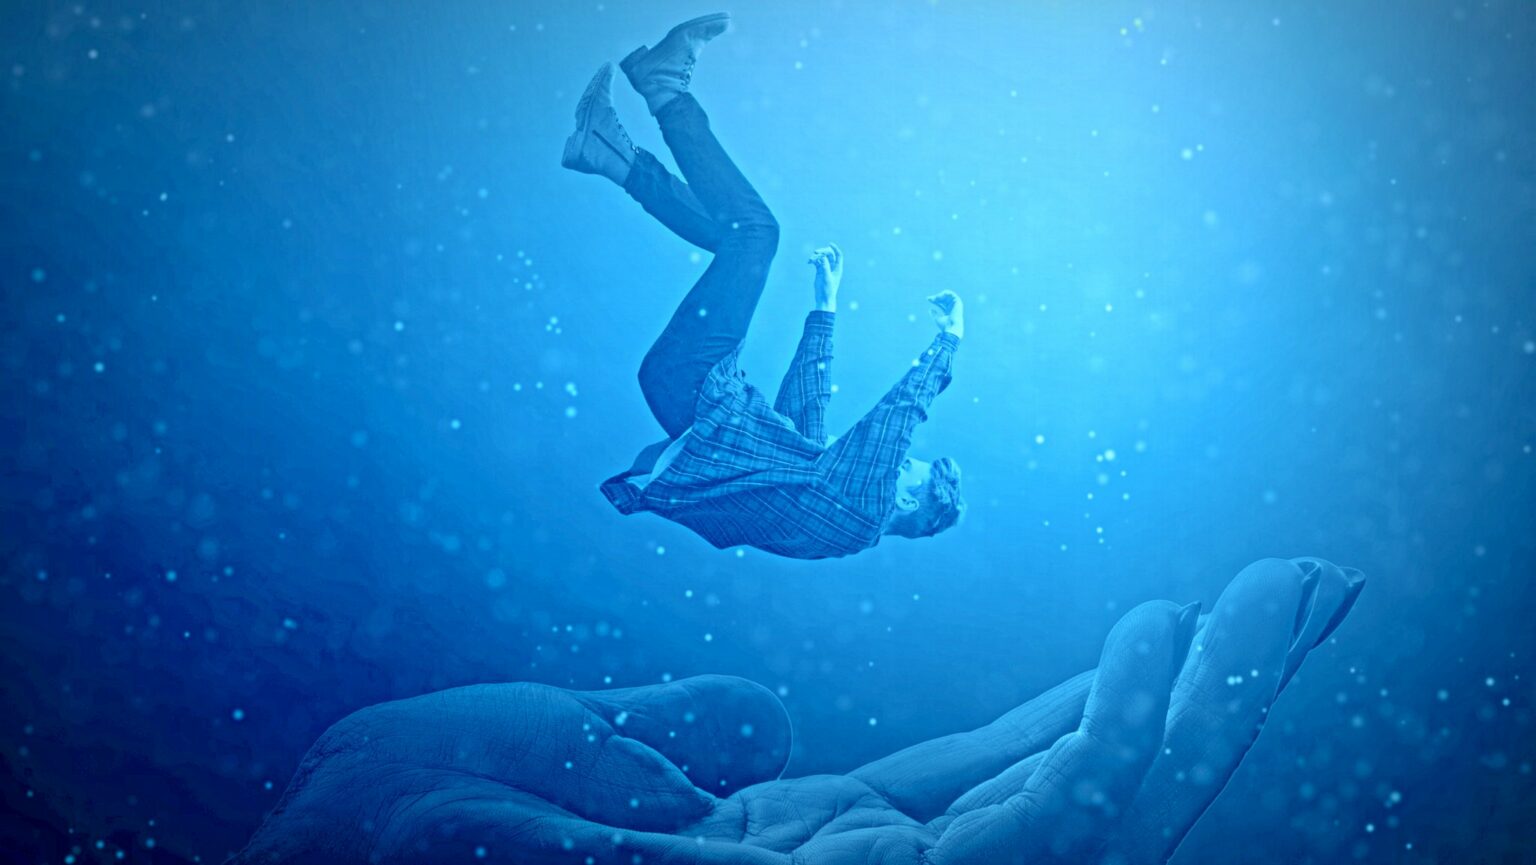 Mann fällt in Hand mystisch dunkel verschwommen fallen